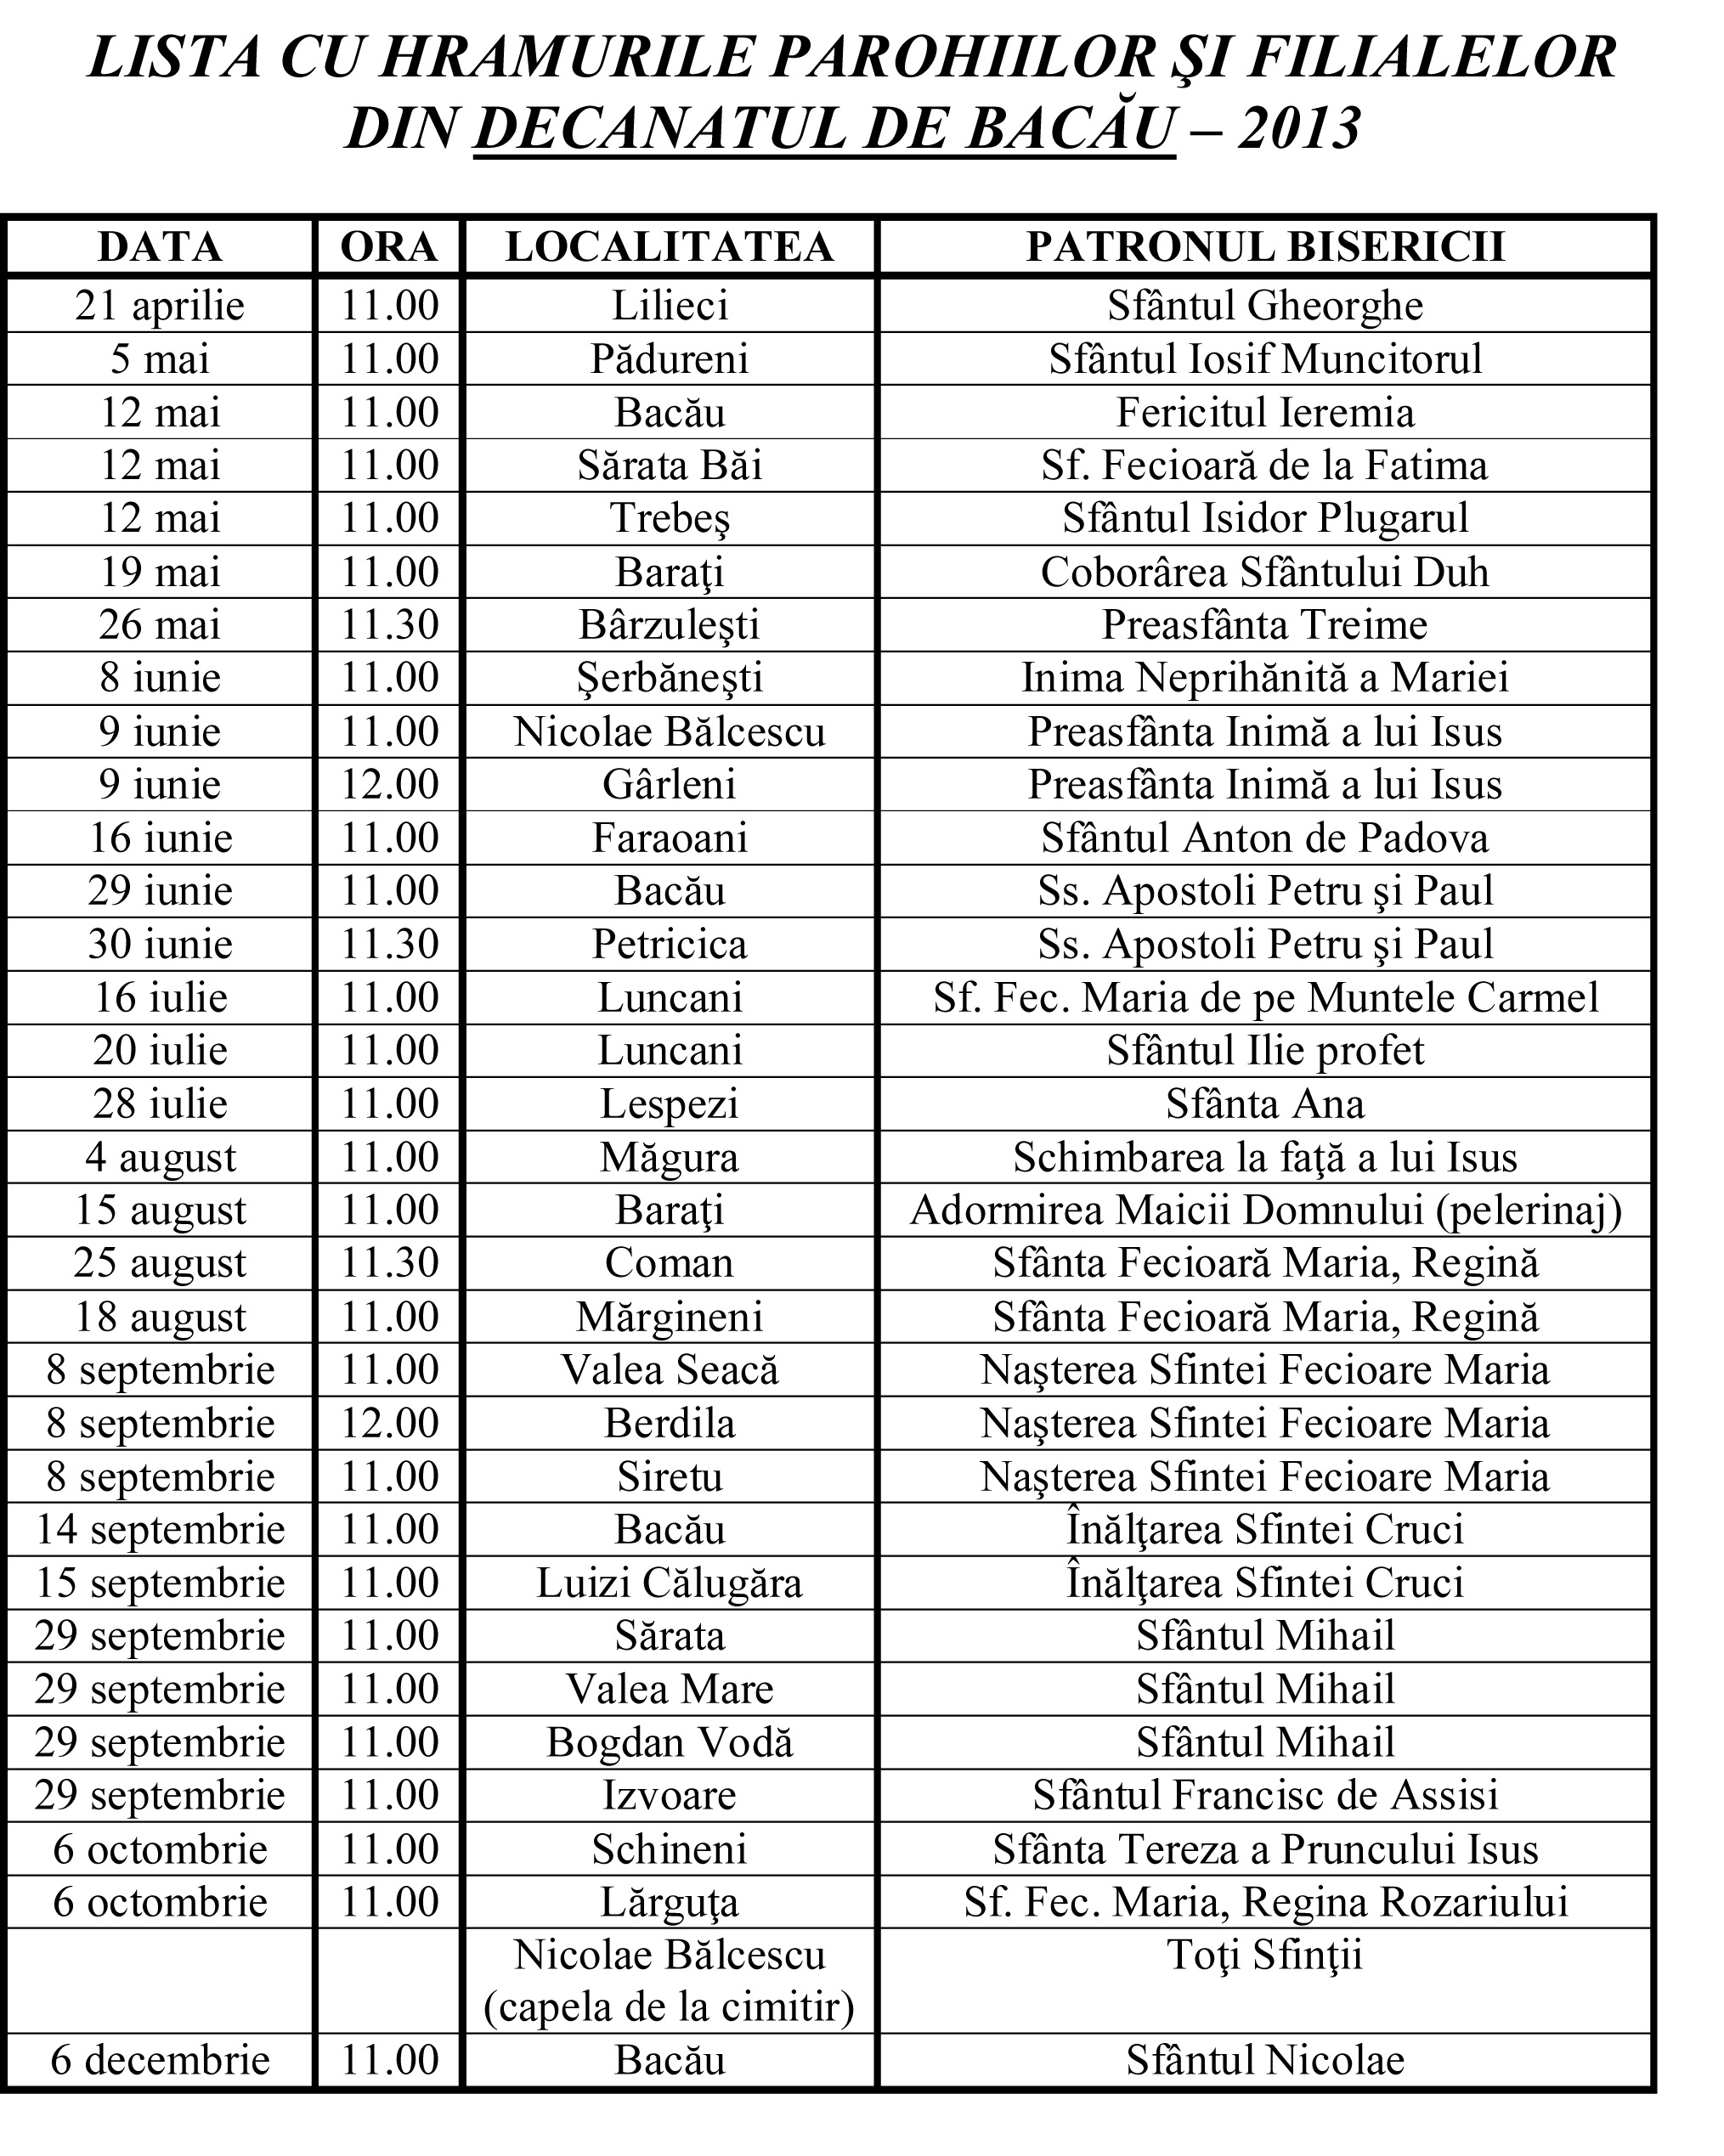 Lista hramurilor în parohiile și filialele din decanatul de Bacău 2013